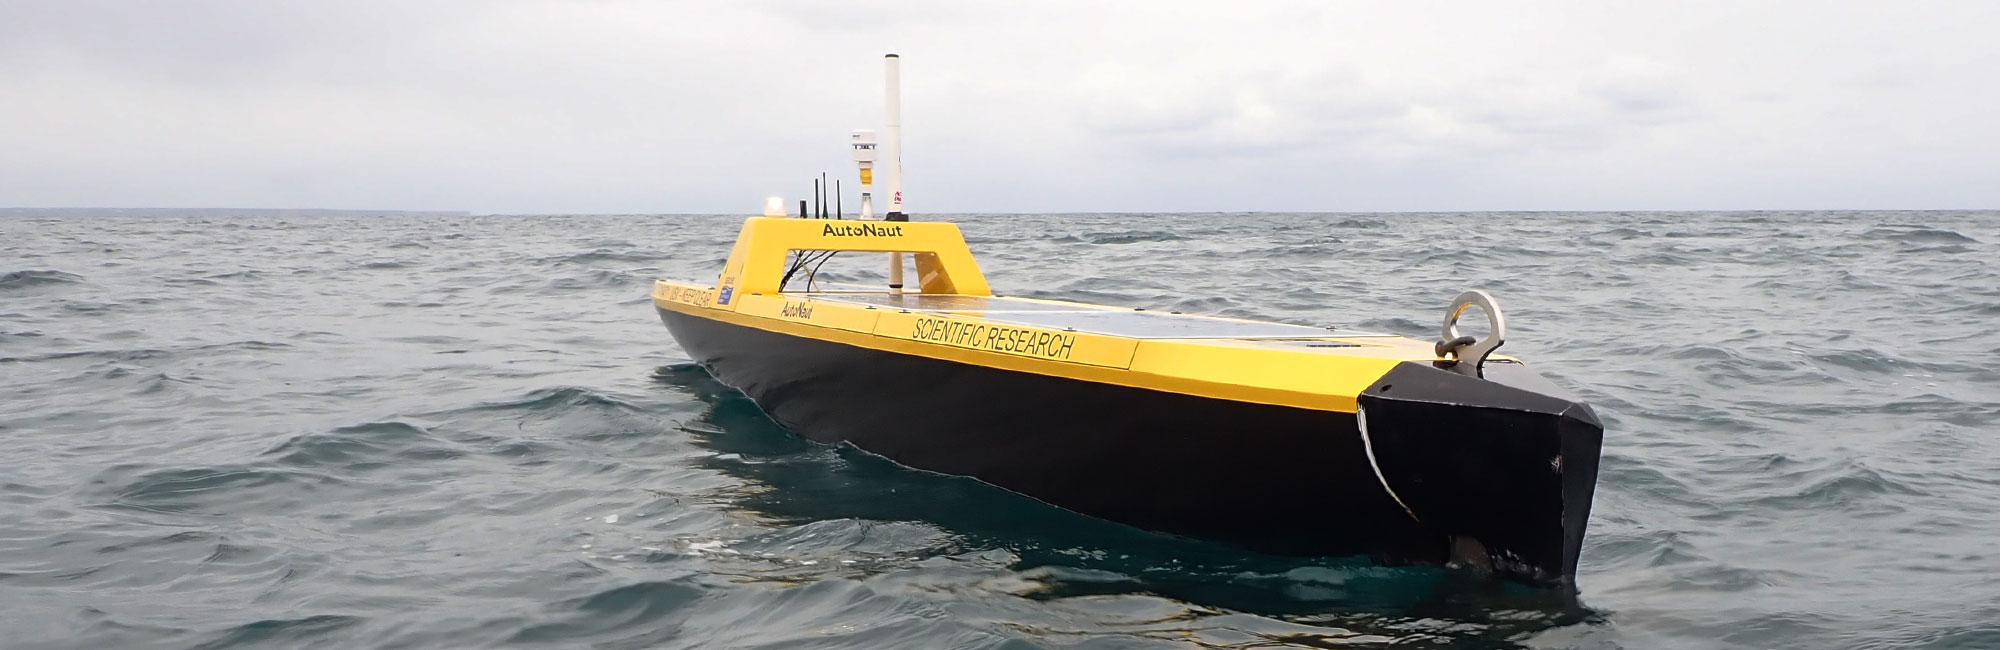 Yellow AutoNaut autonomous vessel on the sea surface close up